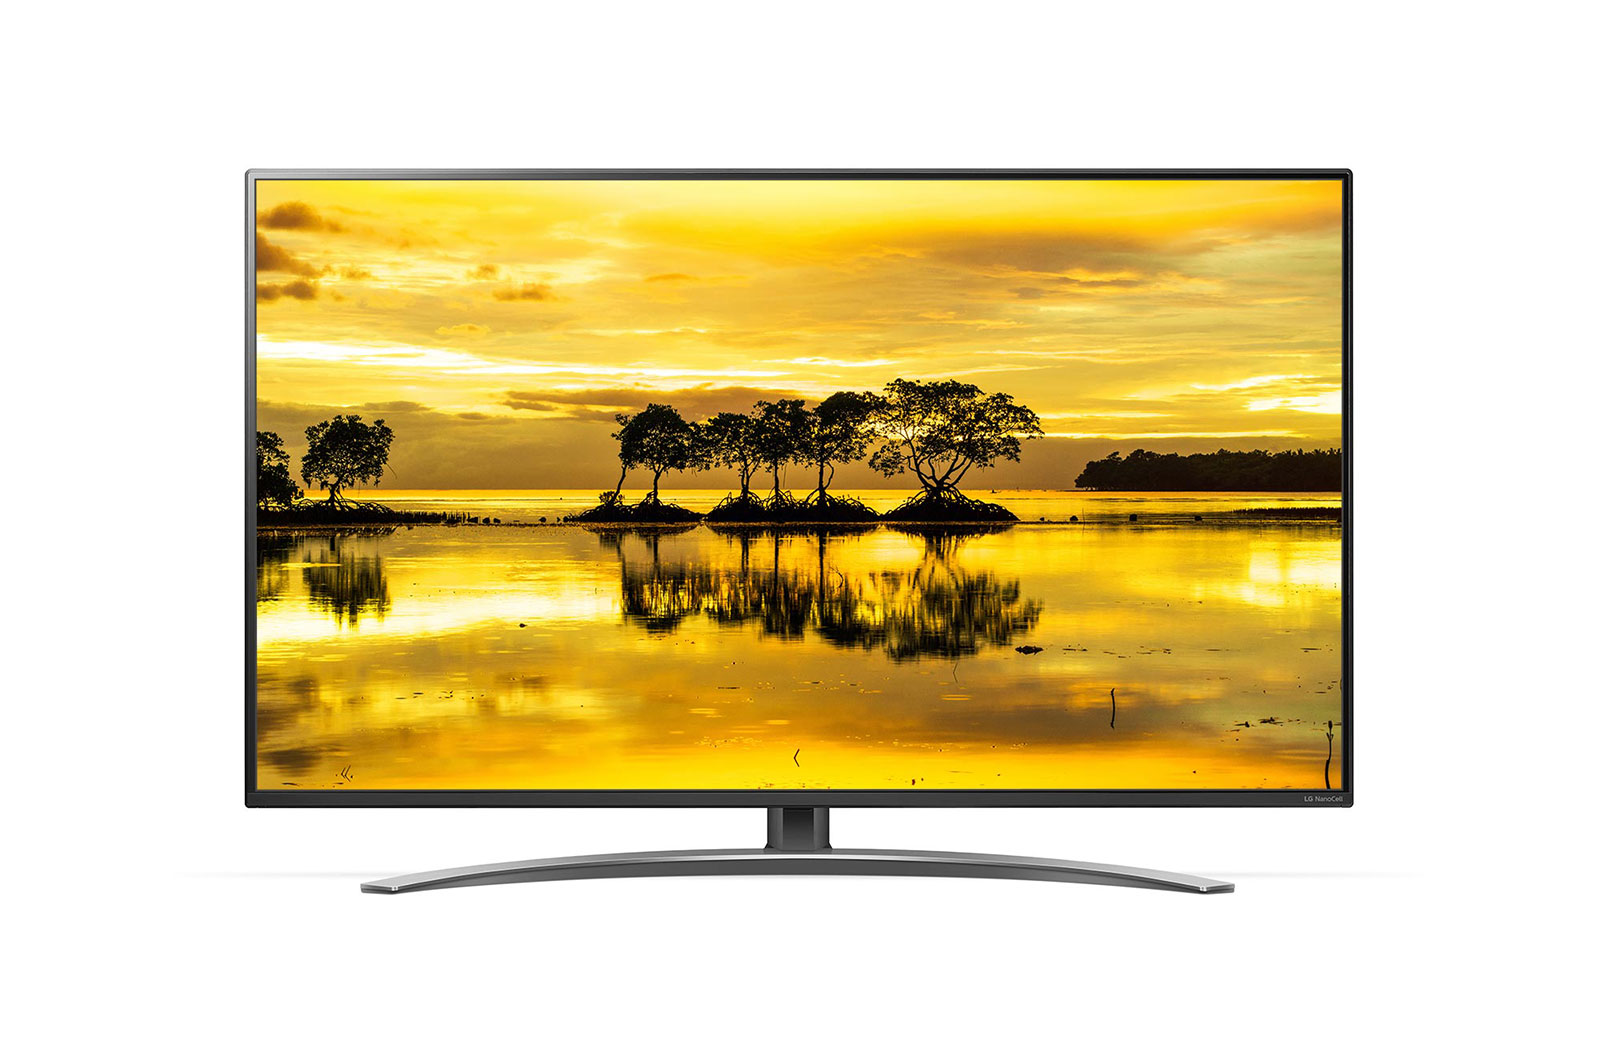 Televizor LED LG Smart TV 49SM9000PLA 123cm 4K Ultra HD HDR Negru/Argintiu